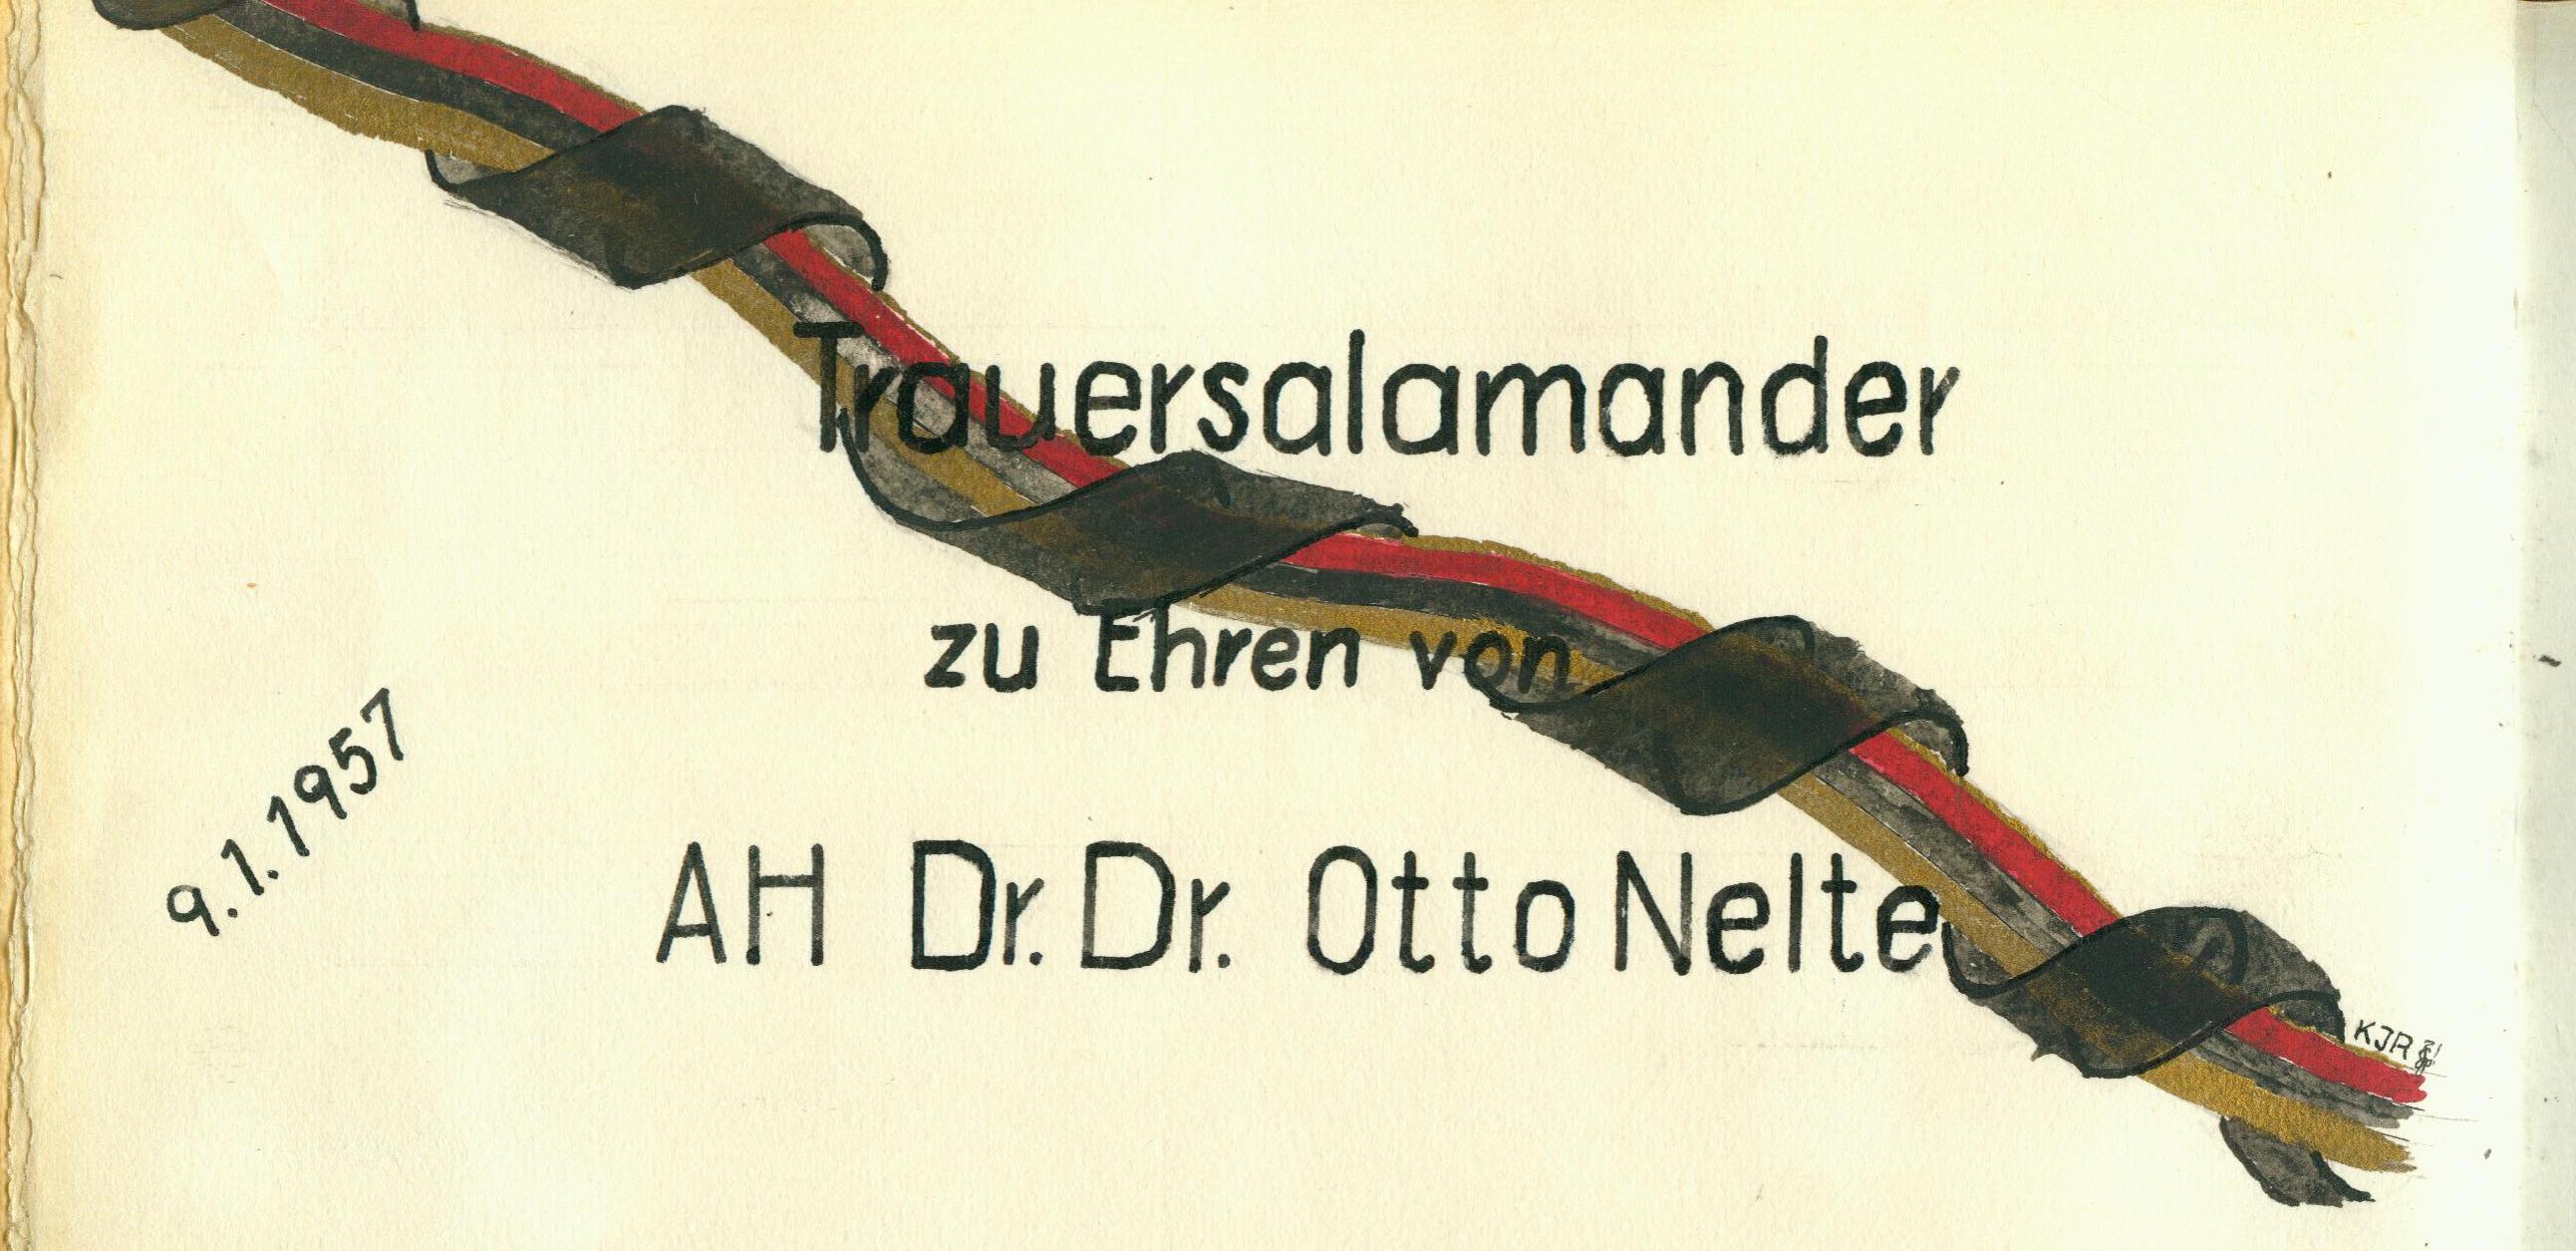 1957_Trauersalamander_AH_Dr_Dr_Otto_Nelte